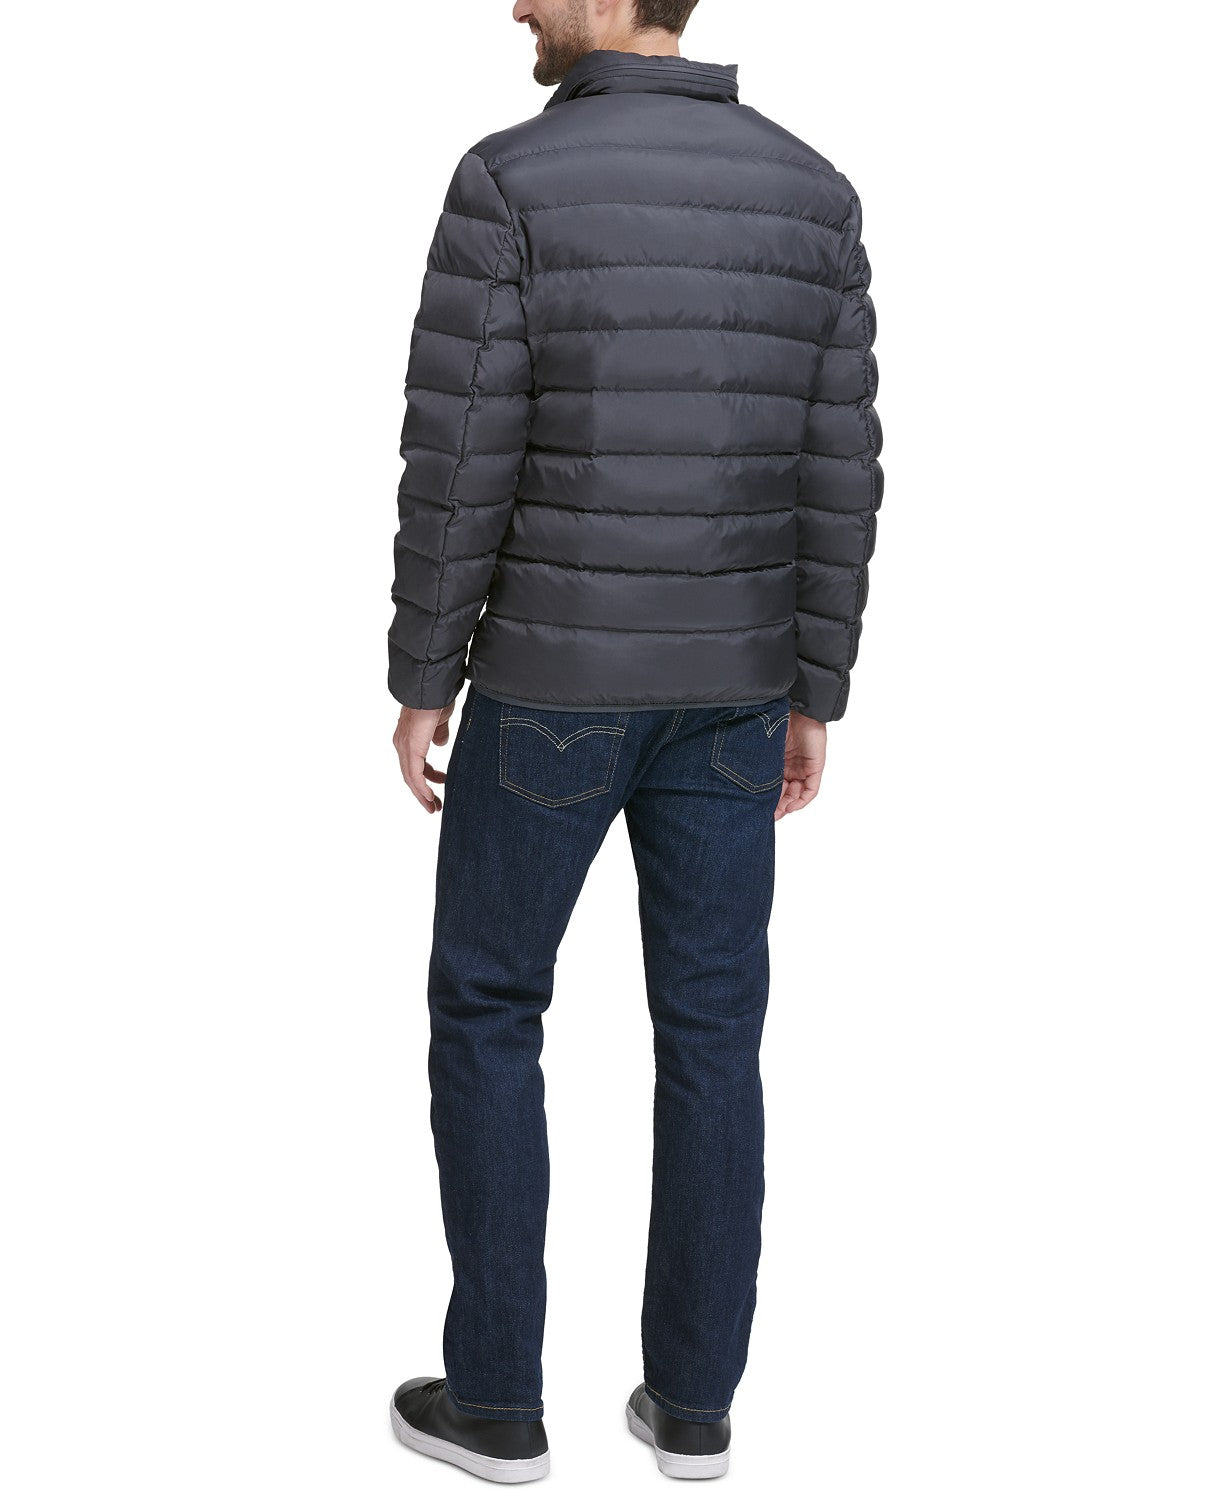 Cole Haan Men's Quilted Zip-Front Jacket Small Grey